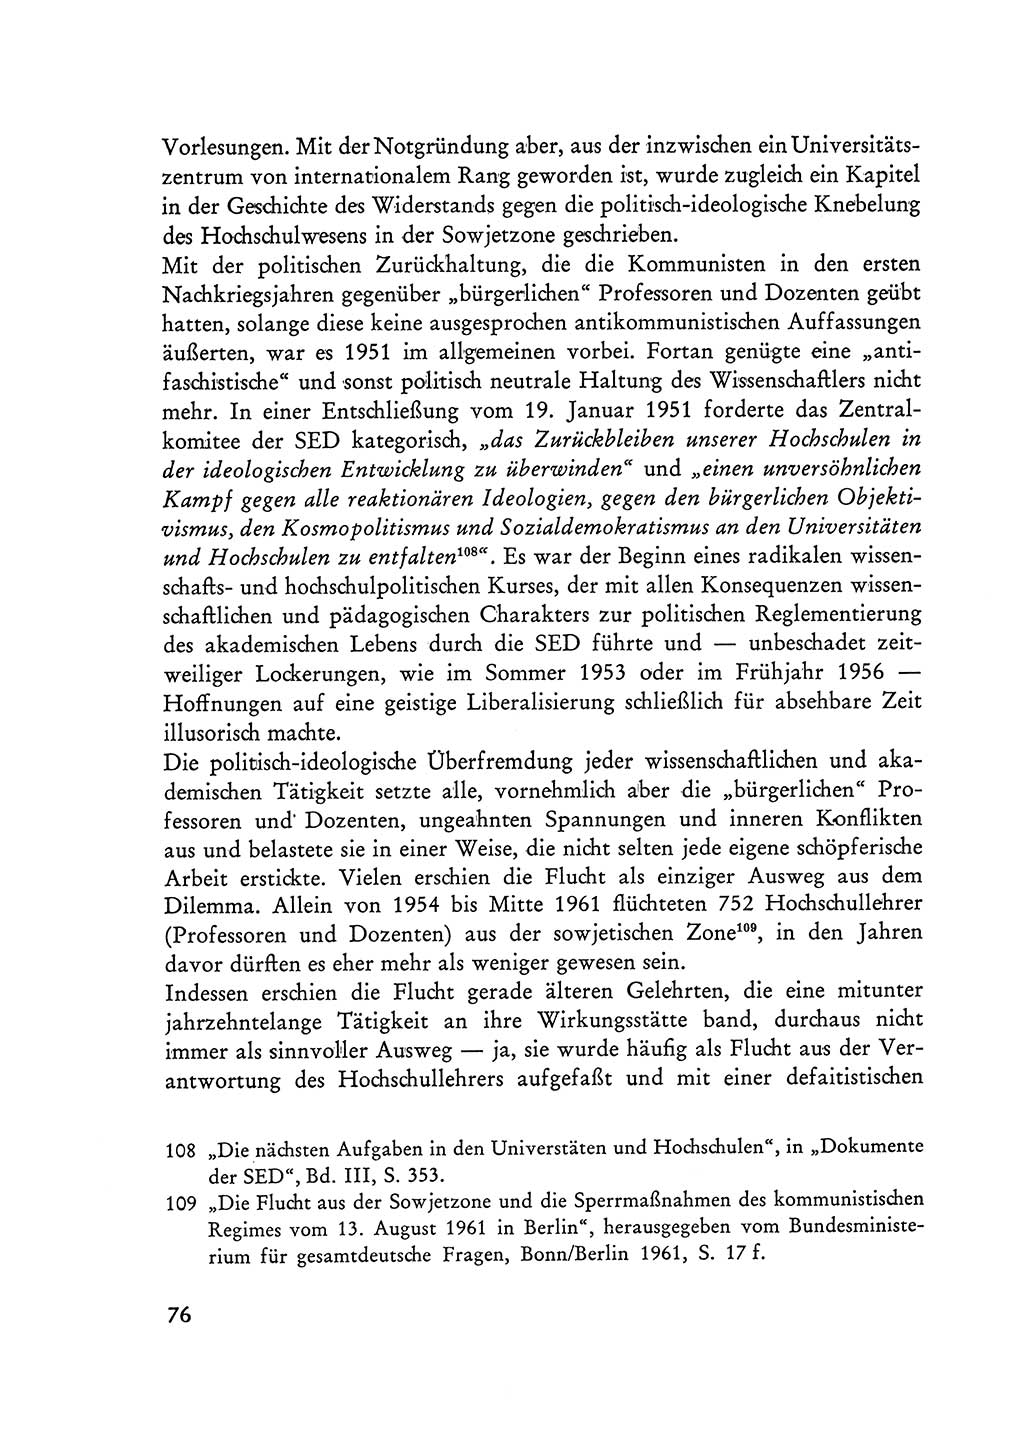 Selbstbehauptung und Widerstand in der Sowjetischen Besatzungszone (SBZ) Deutschlands [Deutsche Demokratische Republik (DDR)] 1964, Seite 76 (Selbstbeh. Wdst. SBZ Dtl. DDR 1964, S. 76)